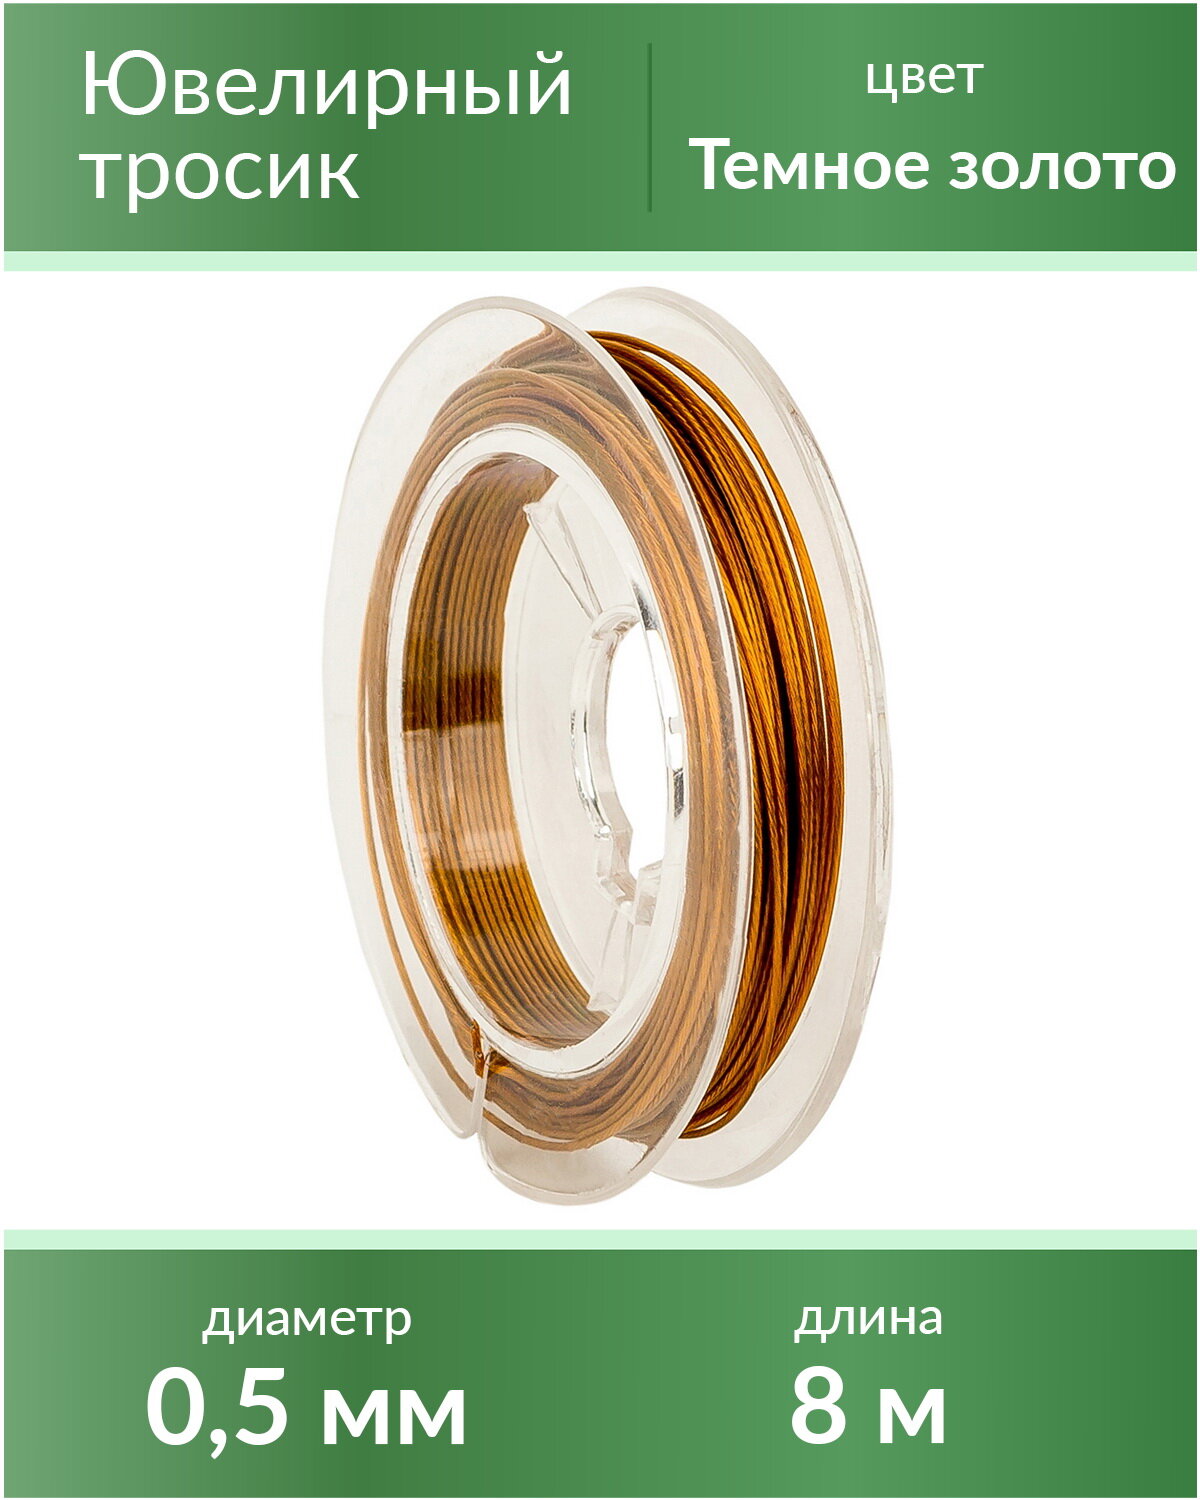 Тросик ювелирный (ланка), диаметр 0,5 мм, цвет: темное золото